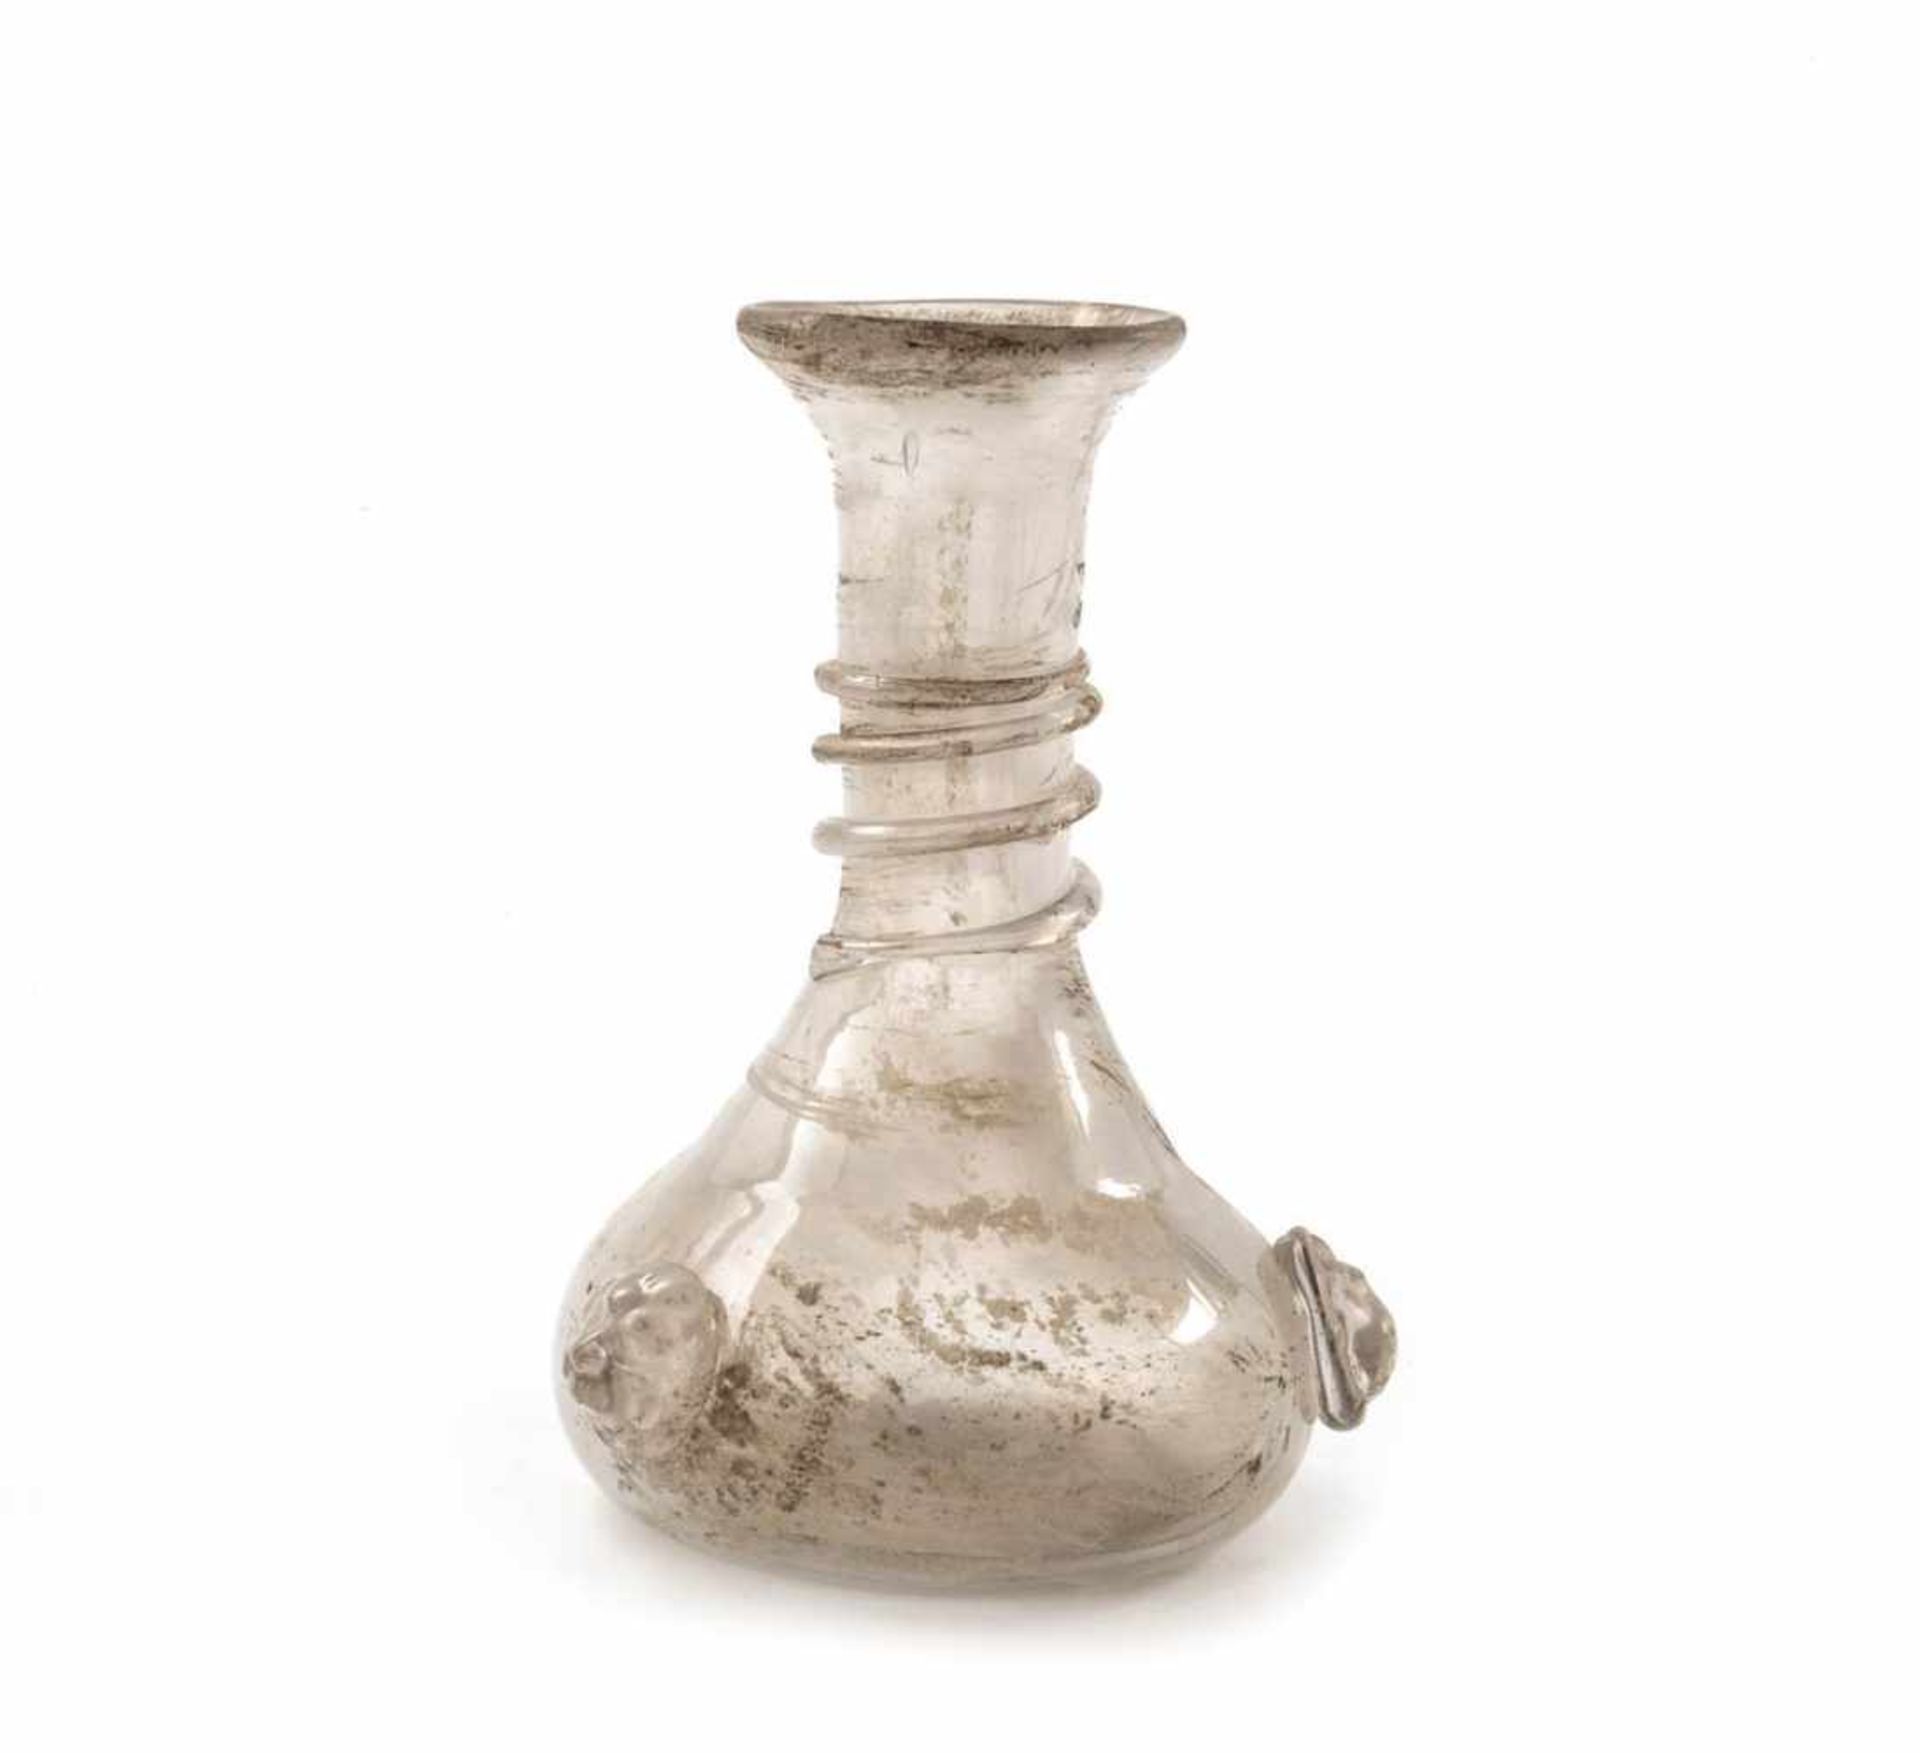 Ziervase Farbloses leicht lüstrierendem Glas. Replik einer antiken Vase. Runder Stand,